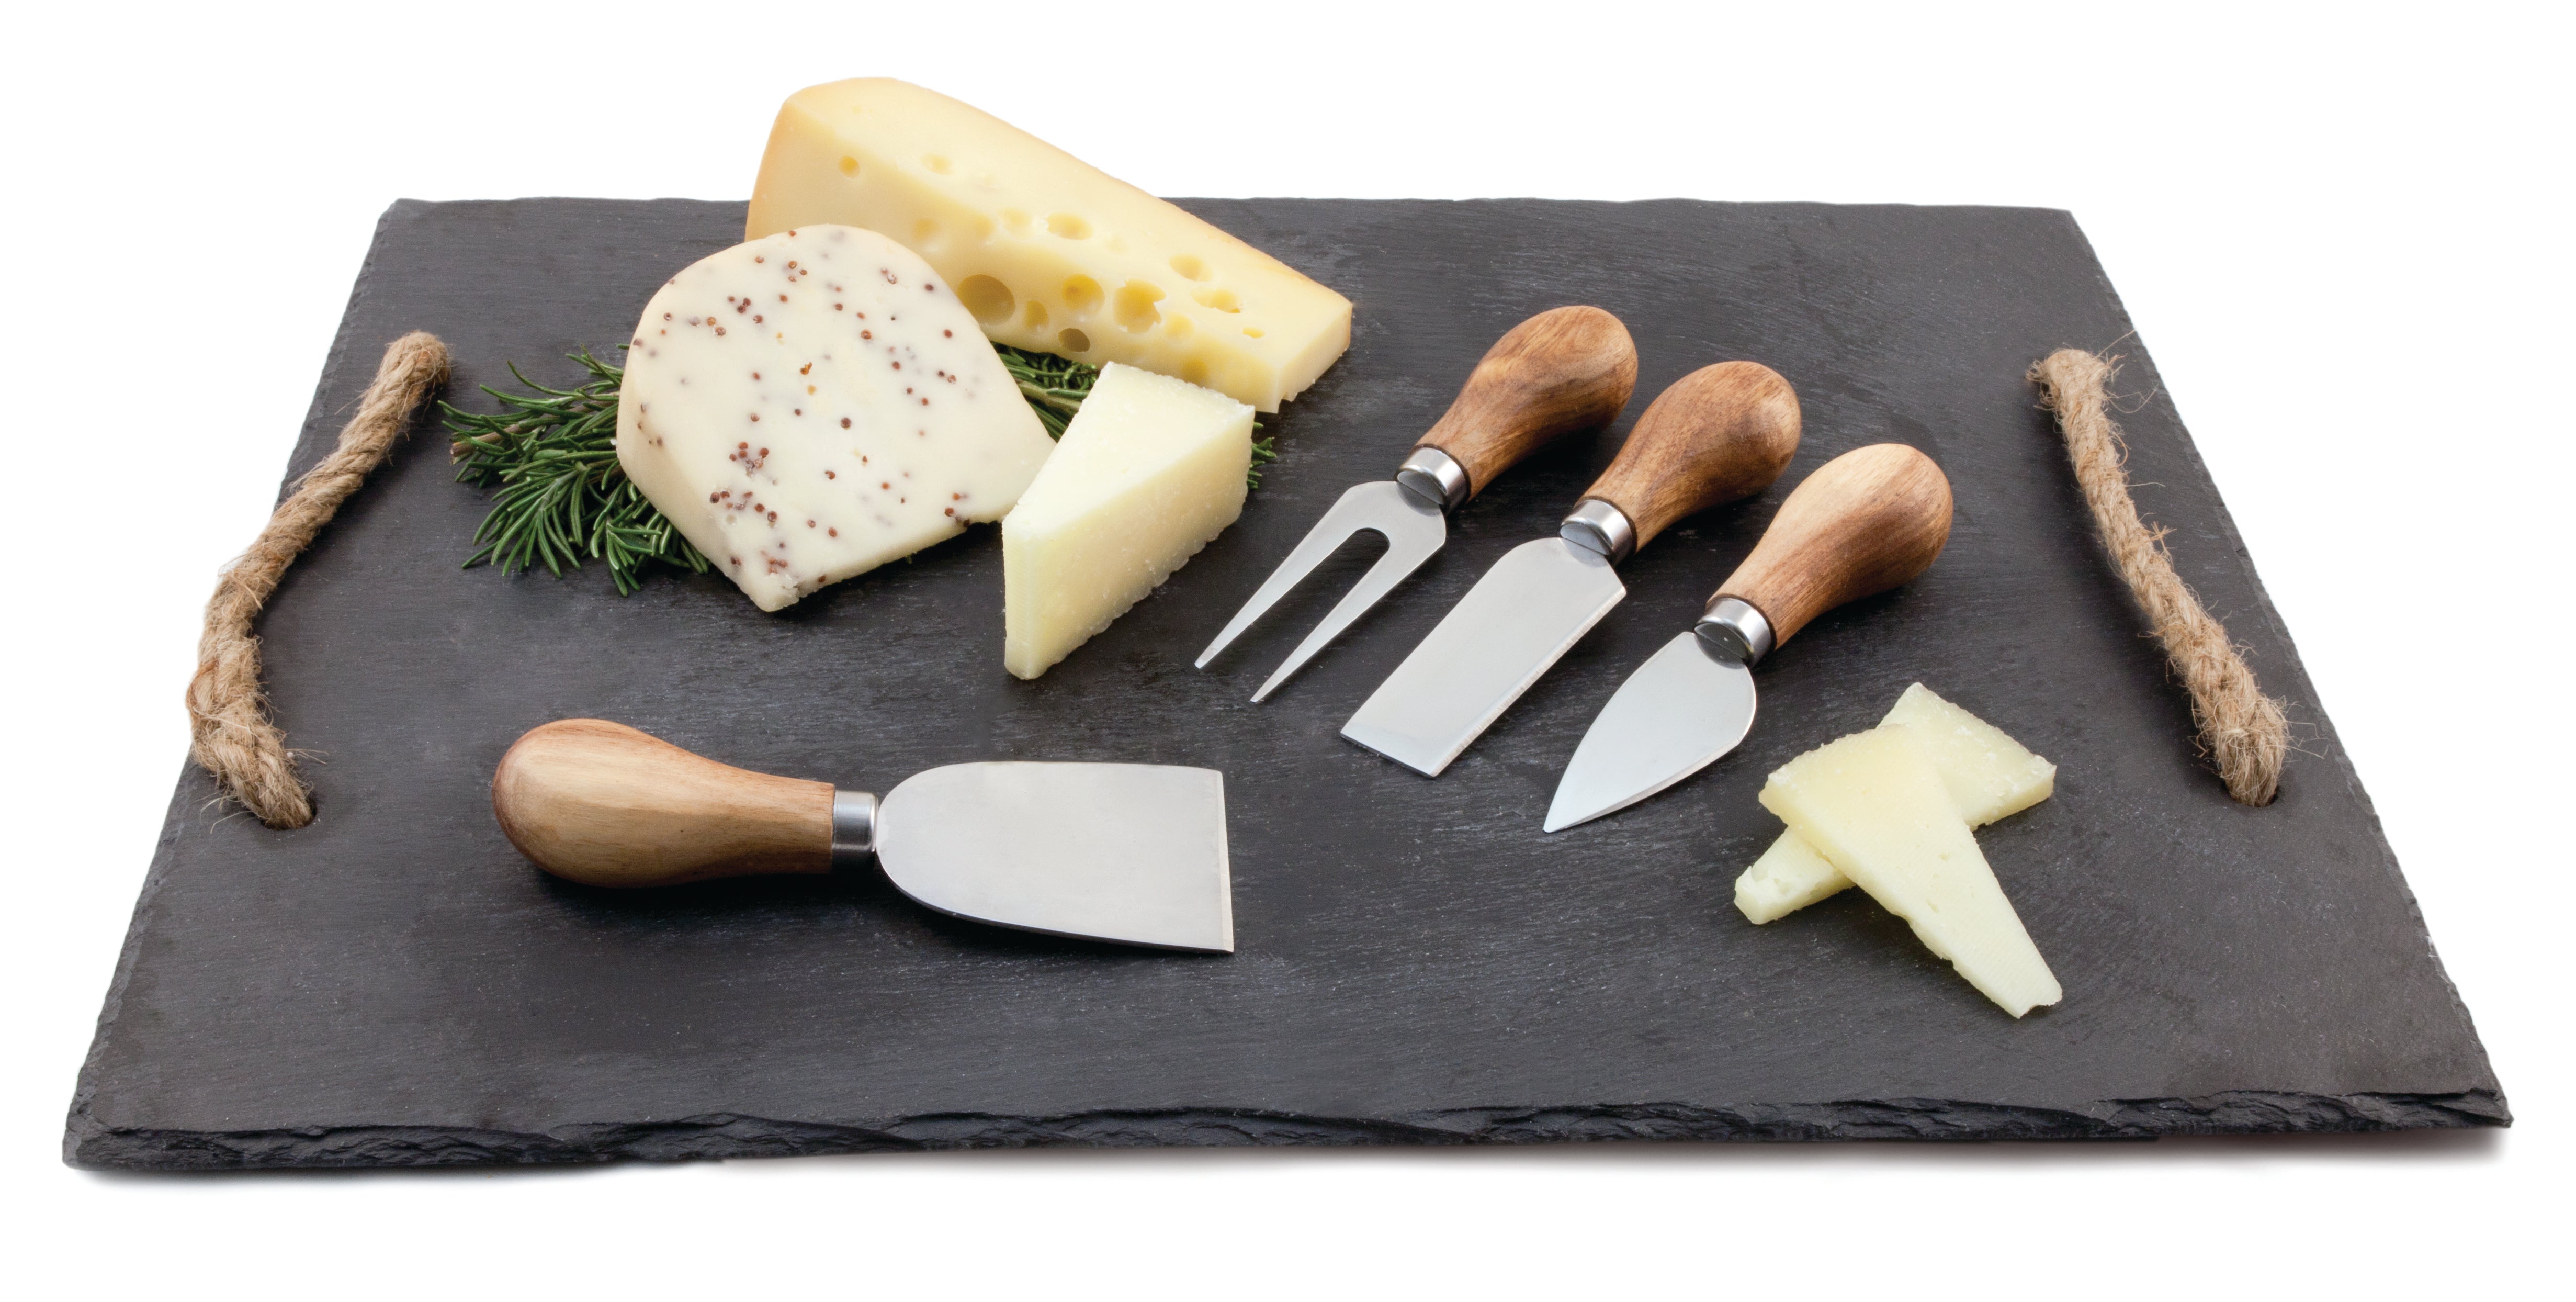 Grove: Gourmet Cheese Tool Set